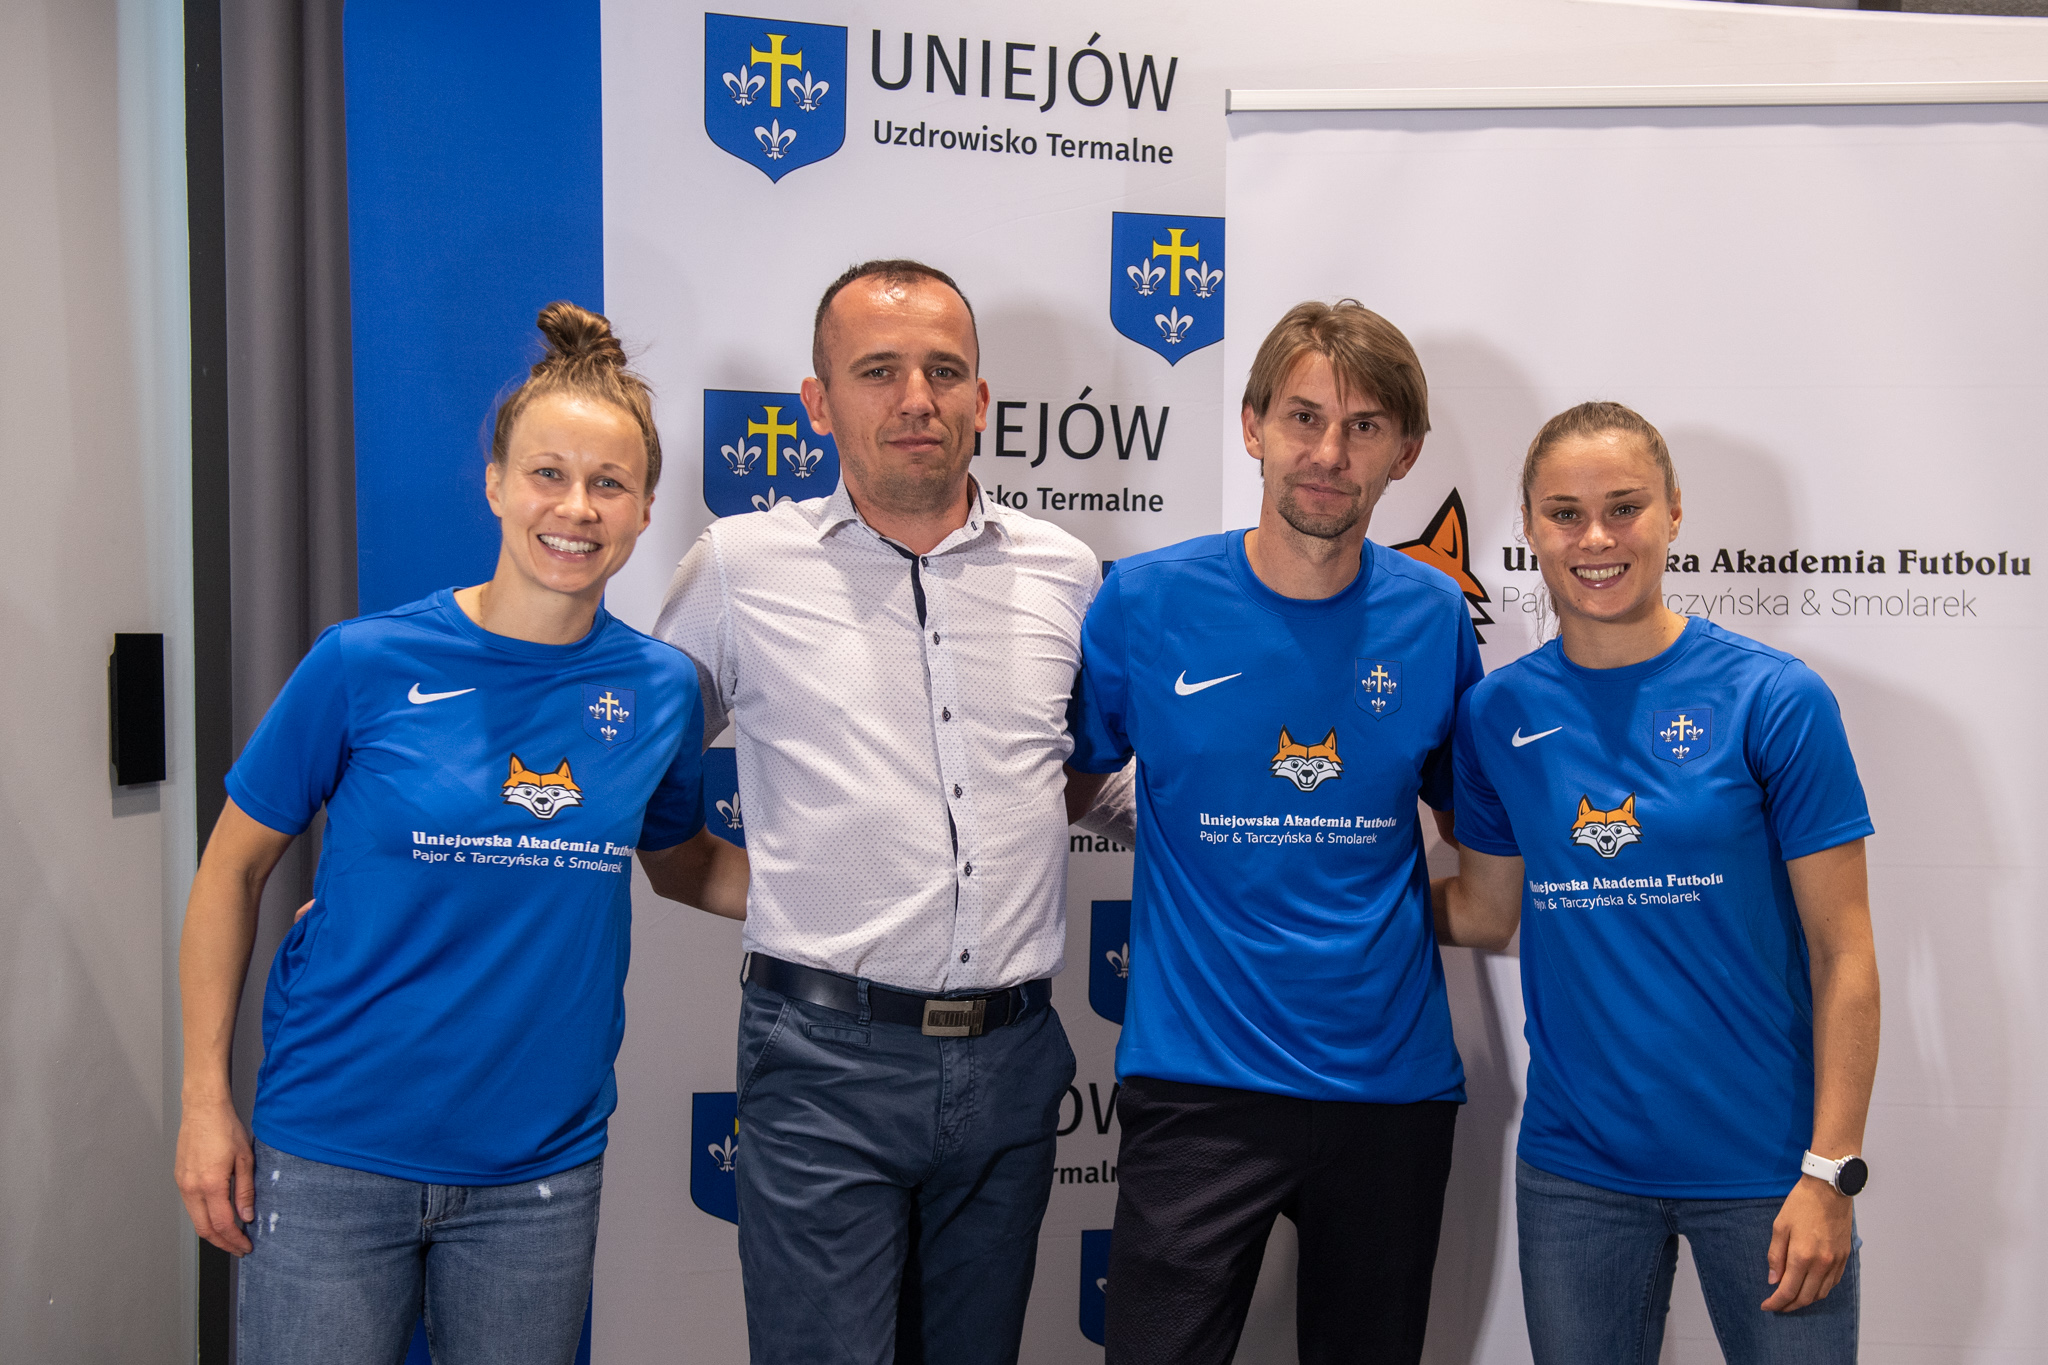 JW Promotion - Agencja marketingu sportowego współpracuje z Uniejowską Akademią Futbolu, której ambasadorami są Smolarek, Pajor i Tarczyńska